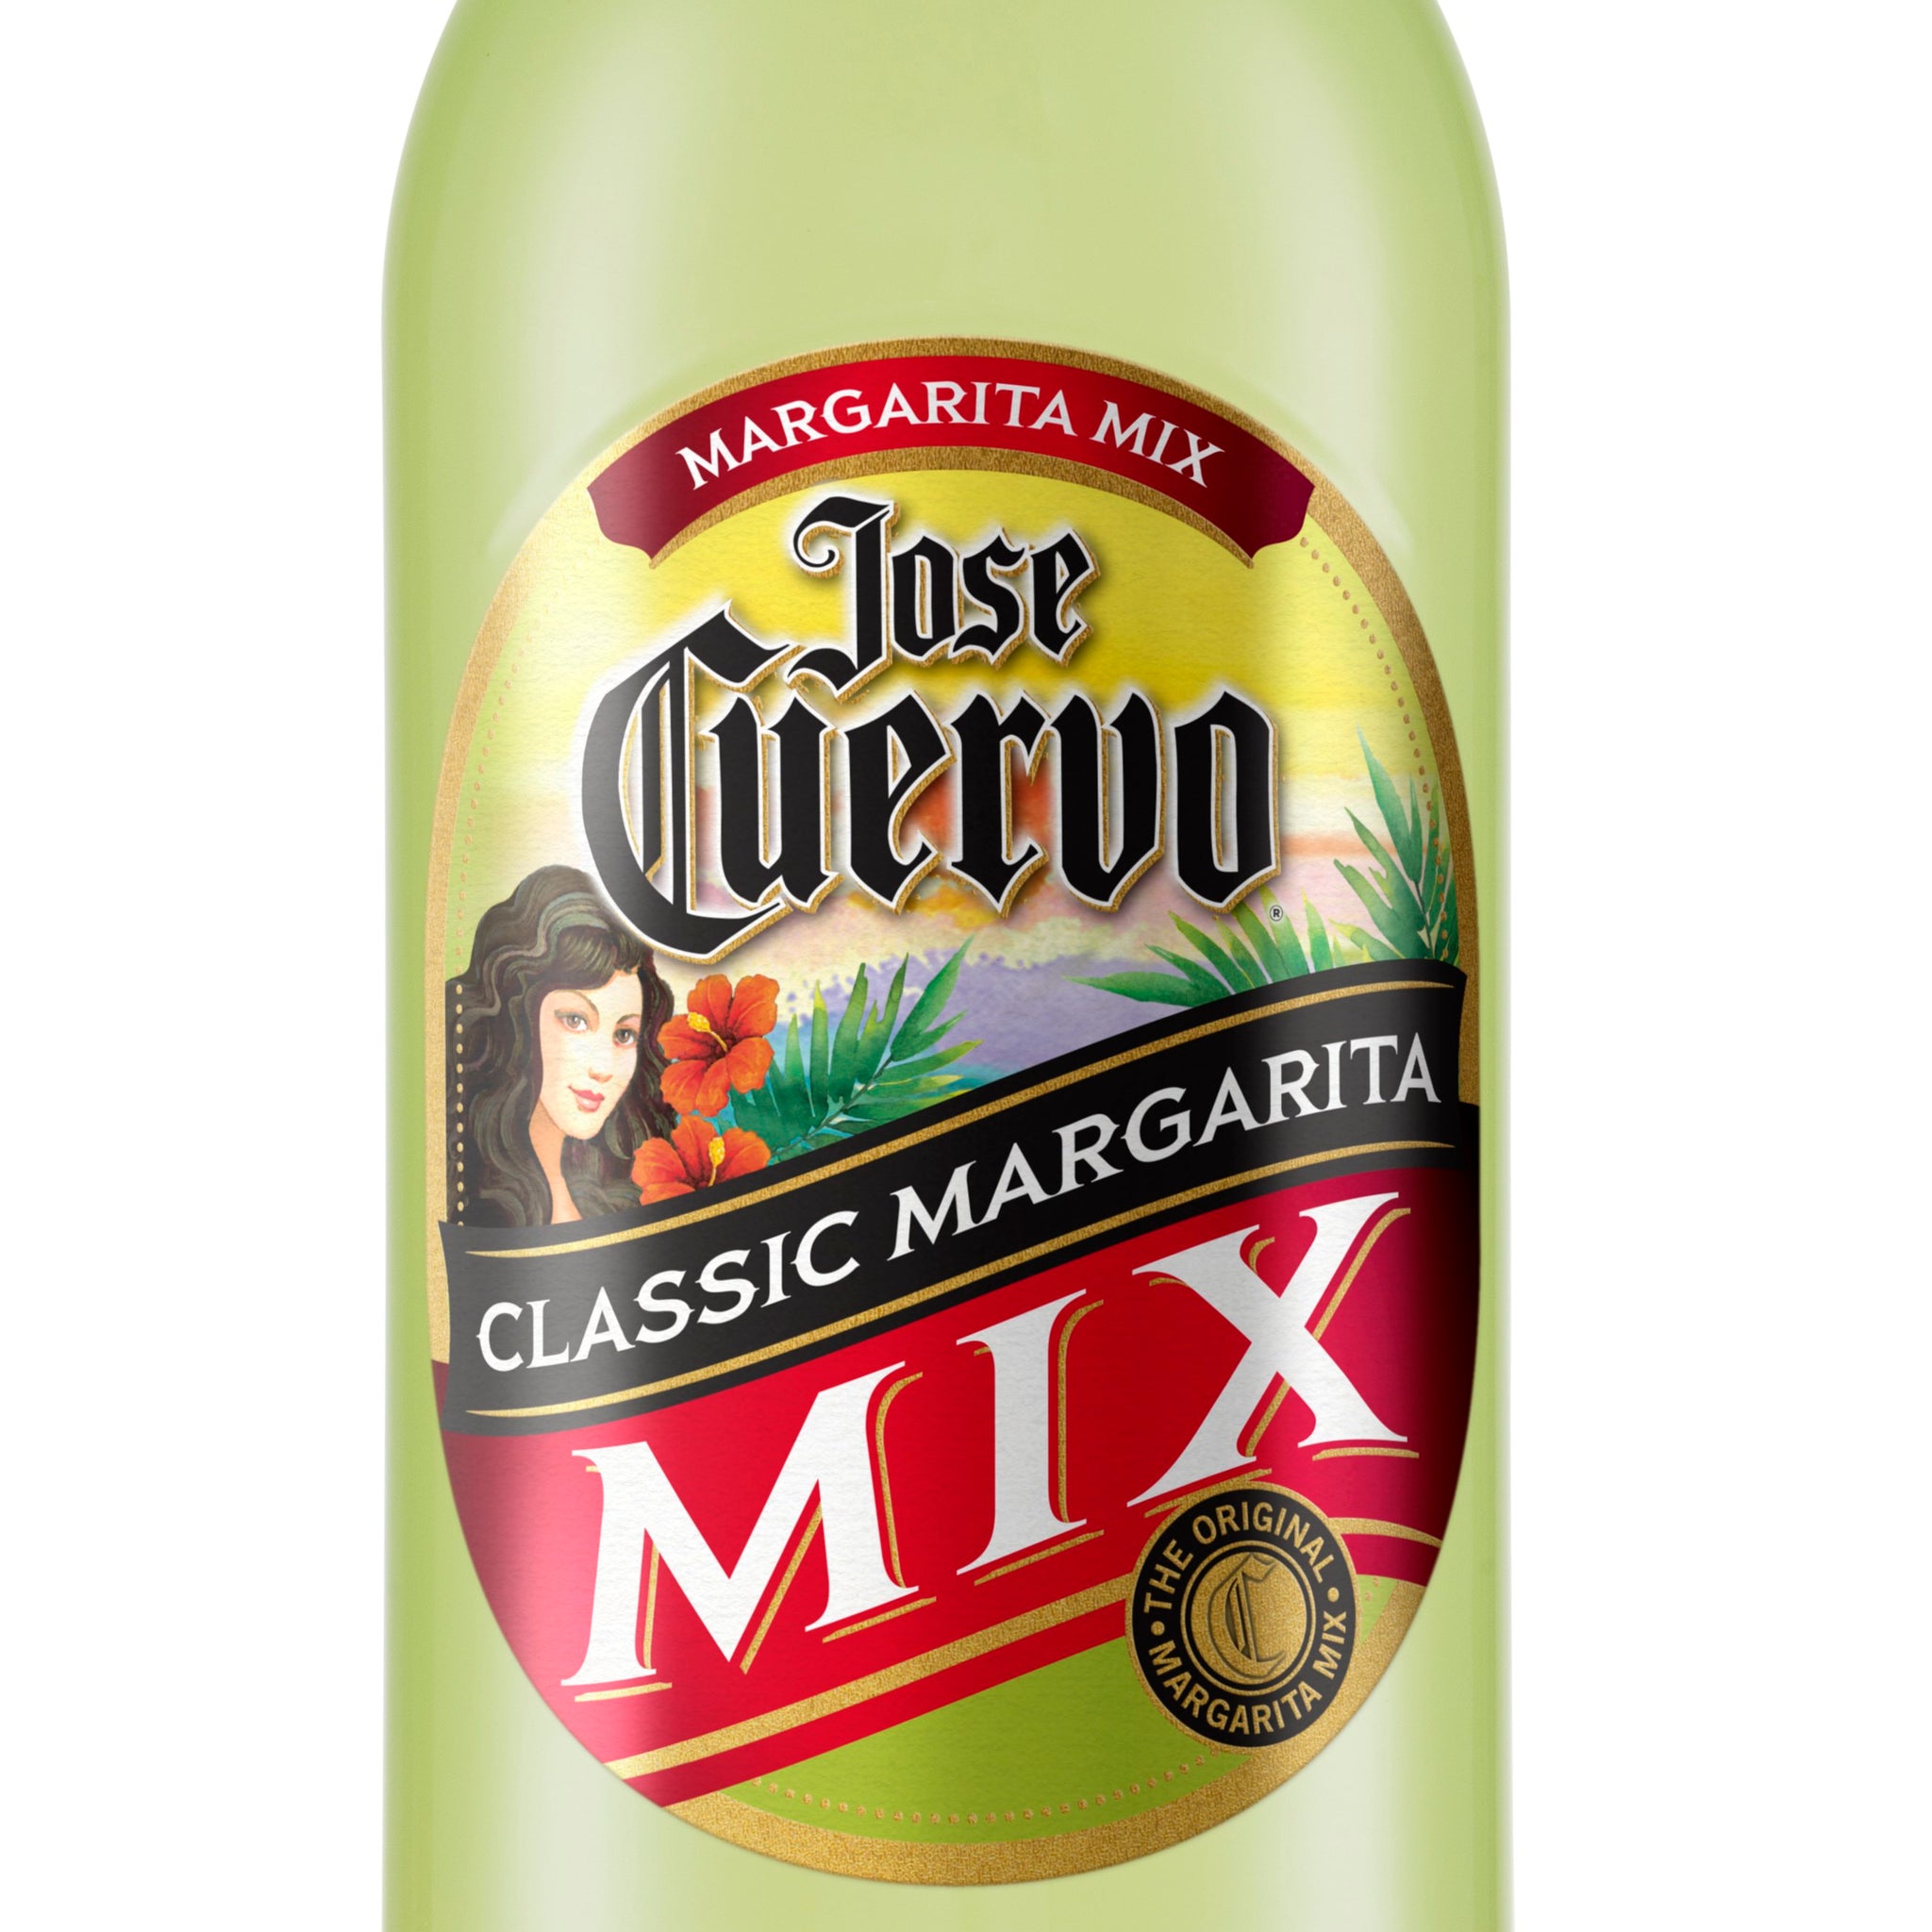 Cuervo Margarita Mix 1lt